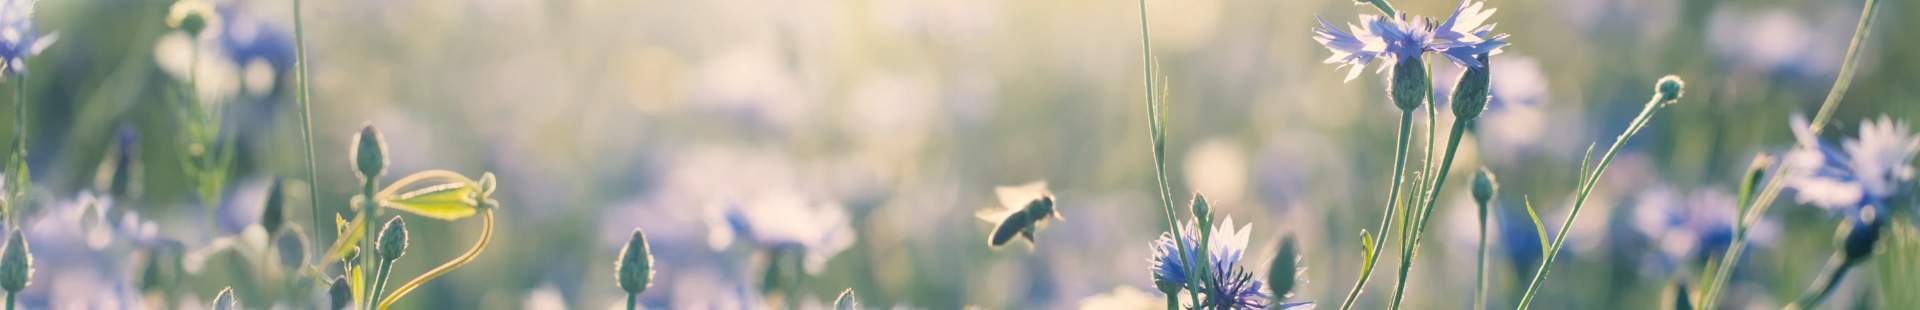 VRK Sponsorings – Blühende Strohblumen mit Bienen.